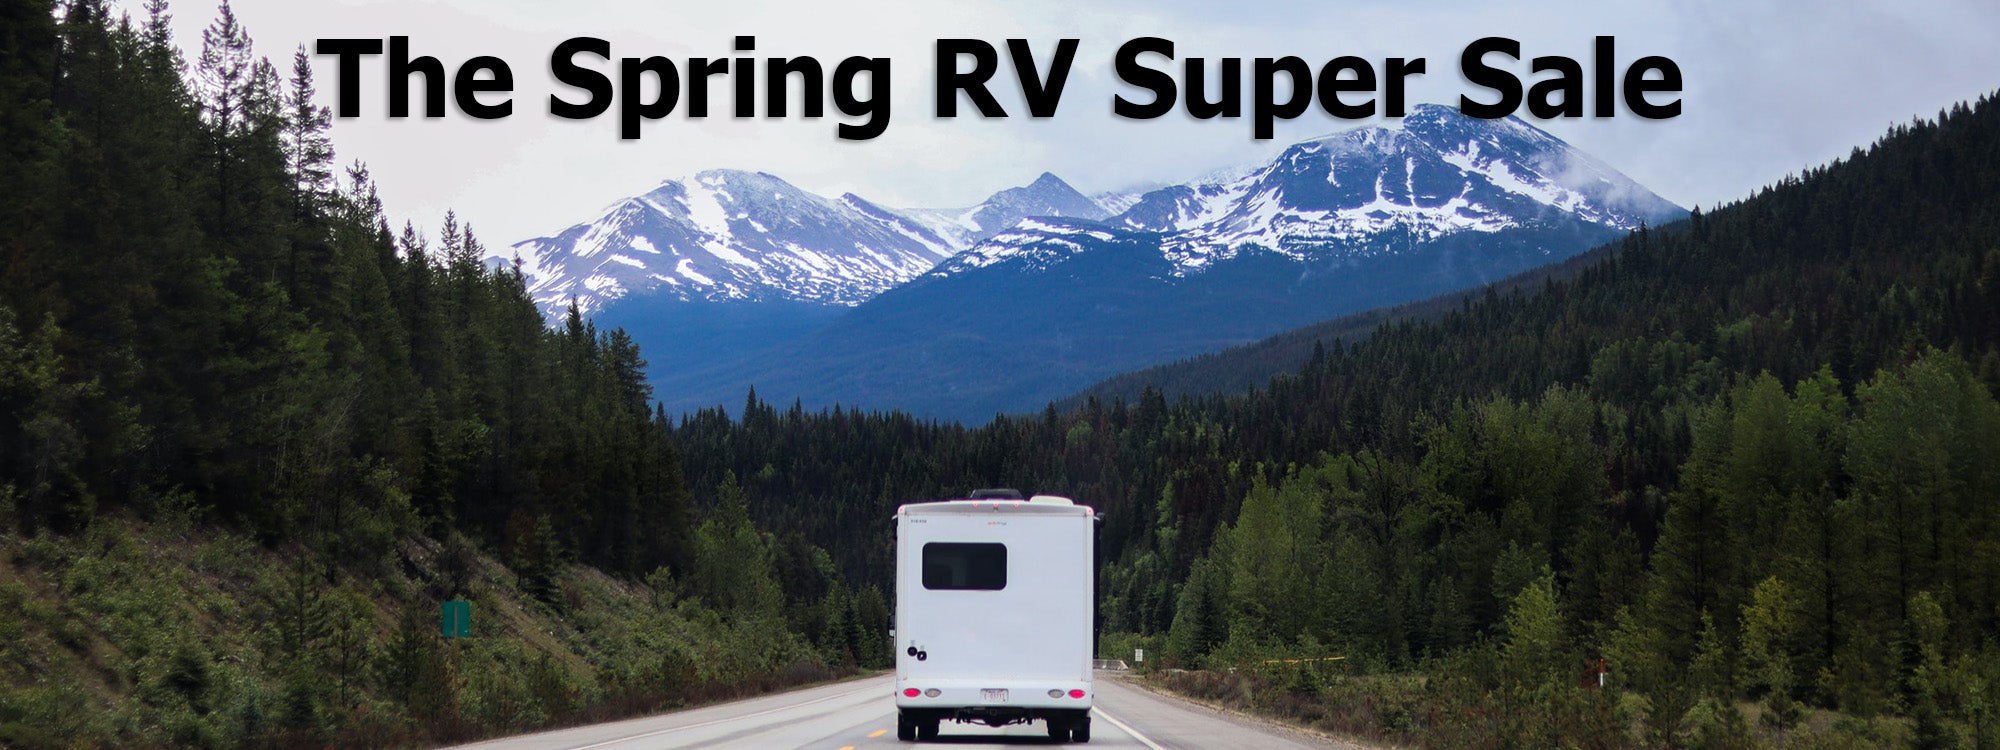 The Spring RV Super Sale